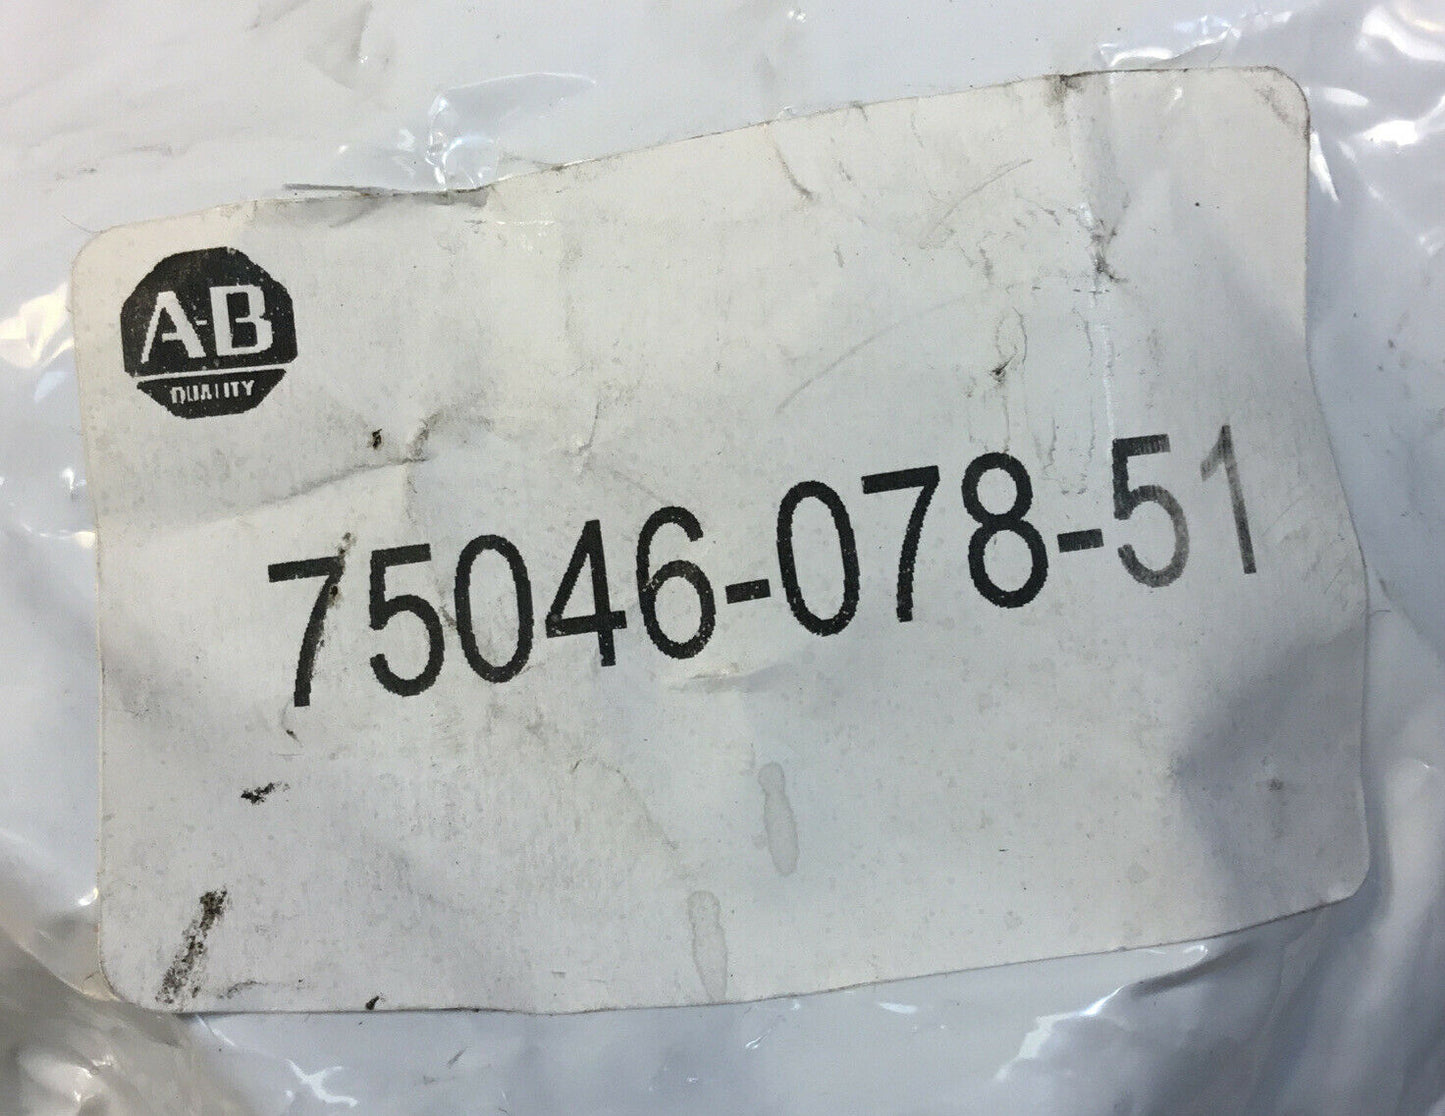 ALLEN BRADLEY MOUNTING BRACKET KIT 75046-078-51 Sealed In Bag   4E-15